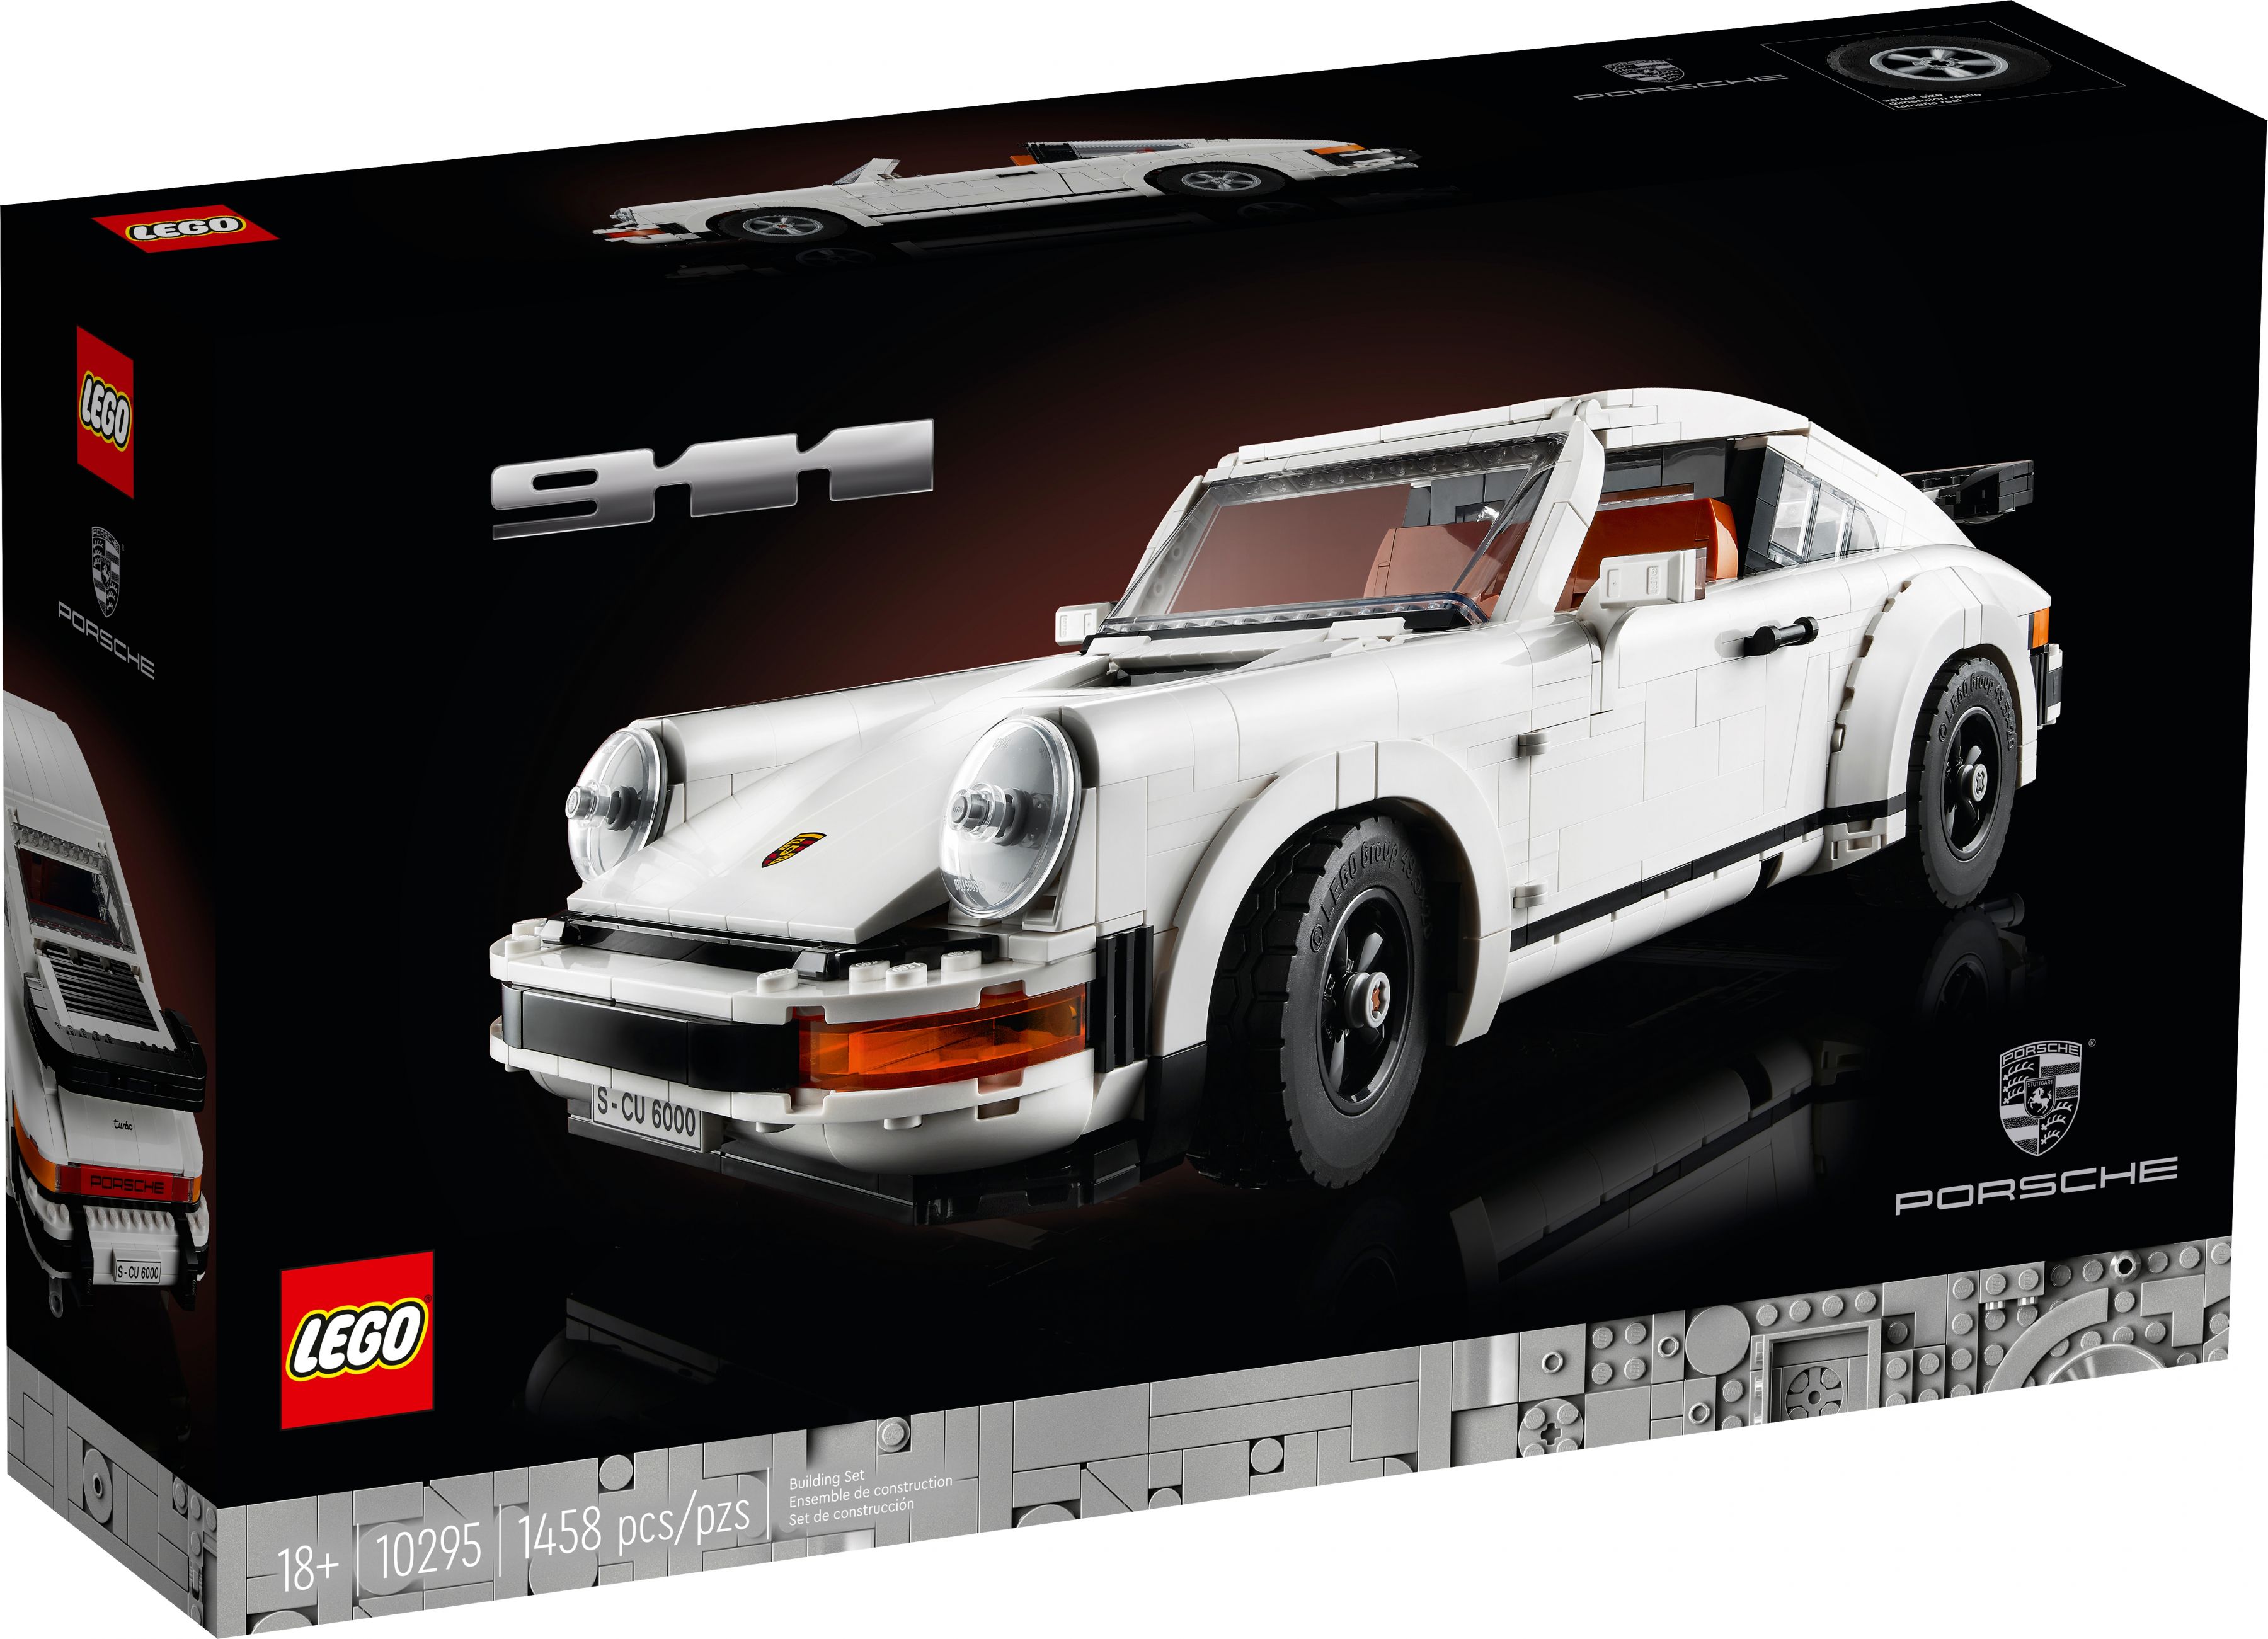 LEGO Advanced Models 10295 Porsche 911 LEGO_10295_alt1.jpg